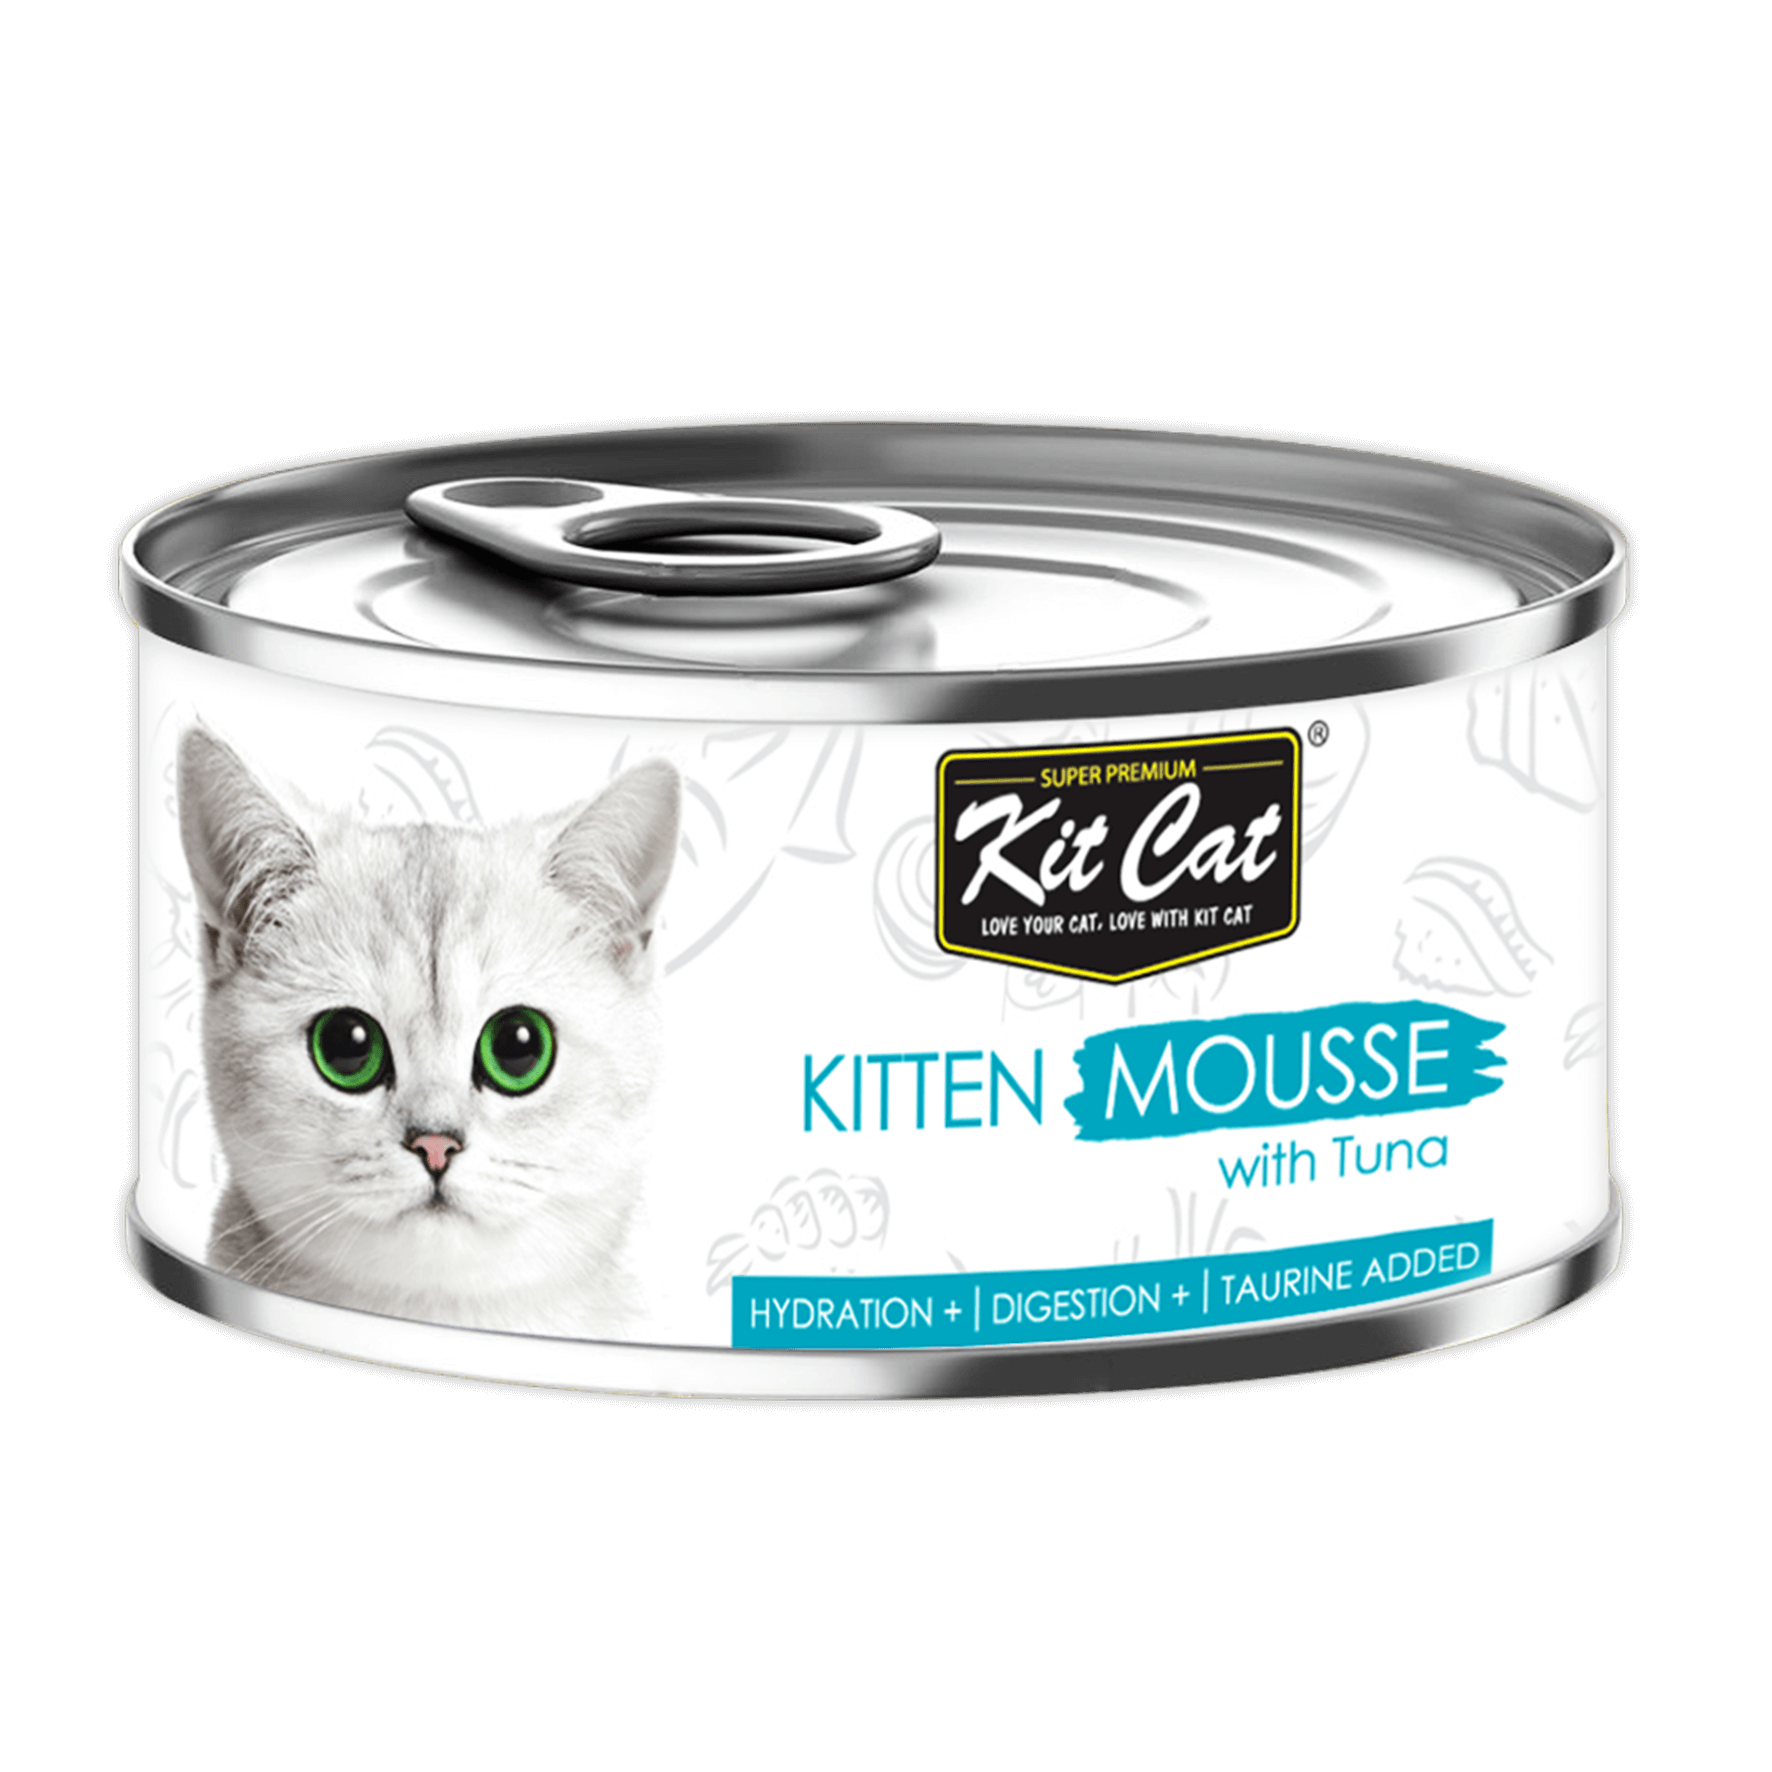 Kit Cat - Kitten Tuna Mousse | Wet Cat Food Toronto